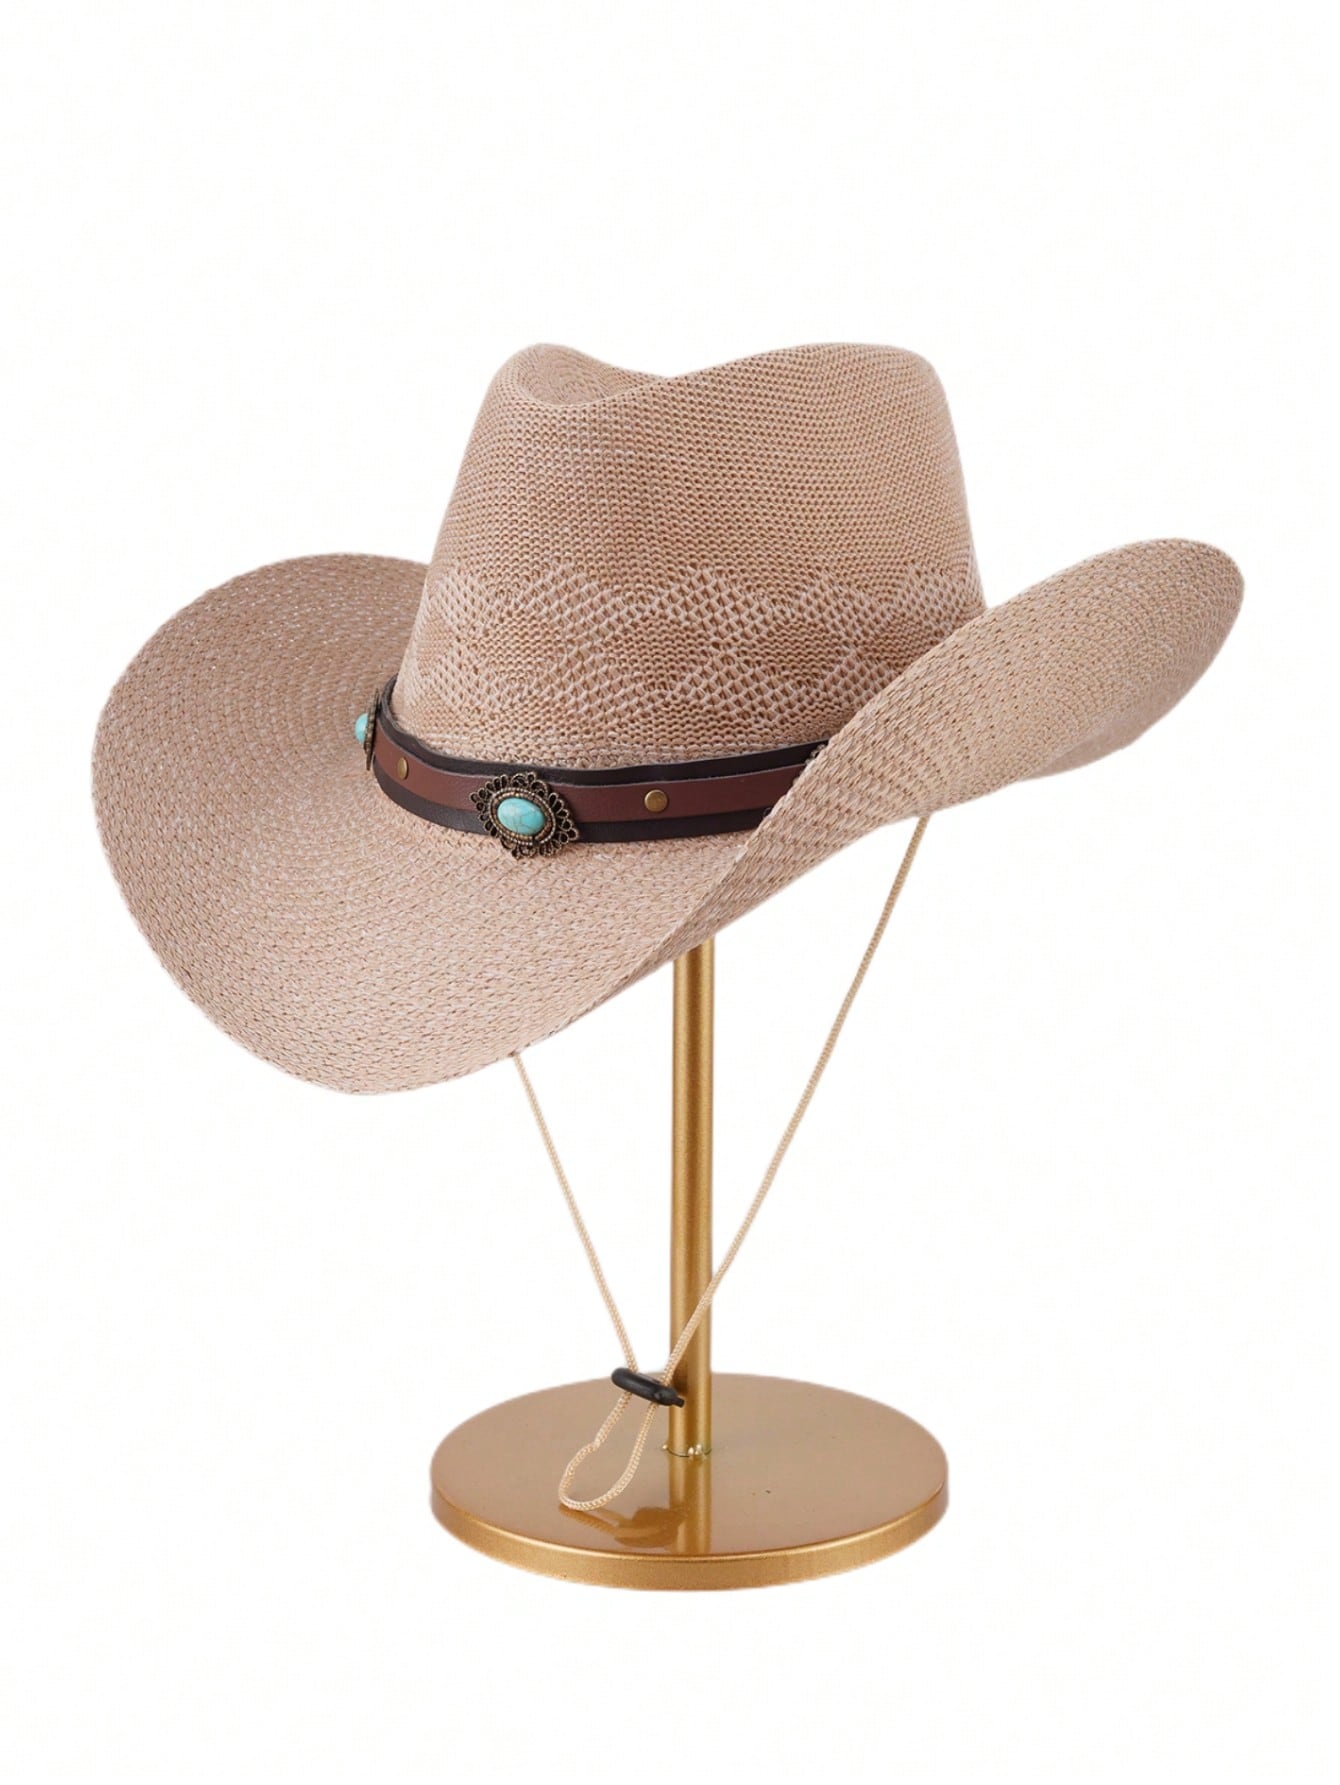 1 шт. джинсовая шляпа от солнца, хаки унисекс украшенная драгоценностями шляпа с подогревом шеи с капюшоном и лицом шапка балаклава шляпа для косплея